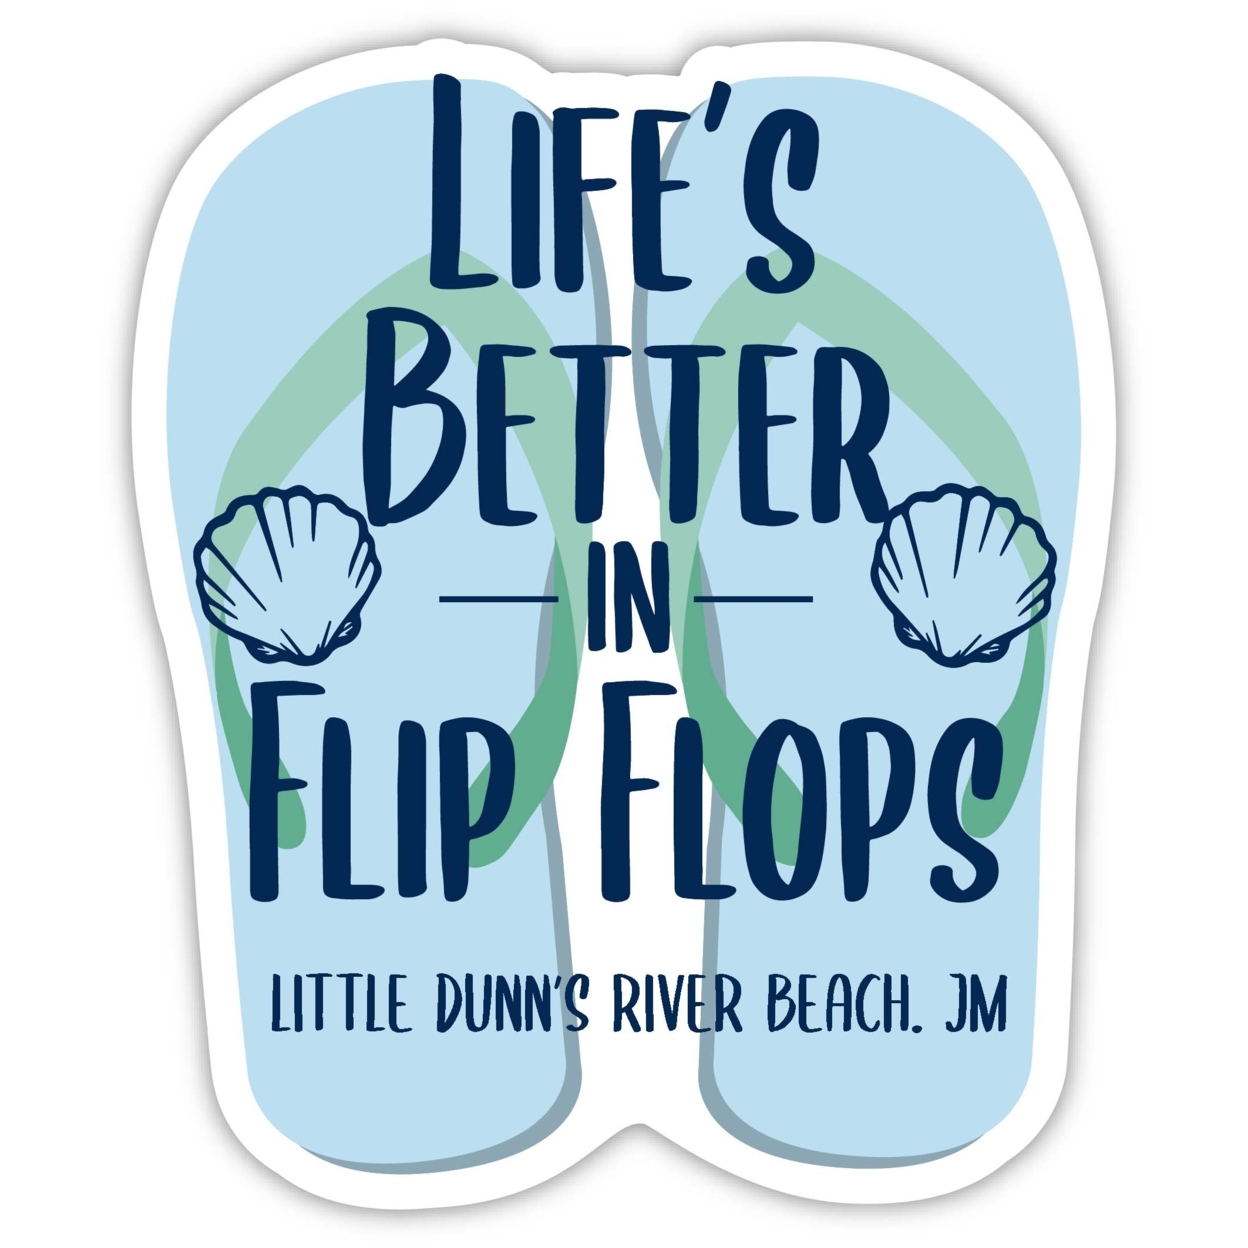 Little Dunn'S River Beach Jamaica Souvenir 4 Inch Vinyl Decal Sticker Flip Flop Design